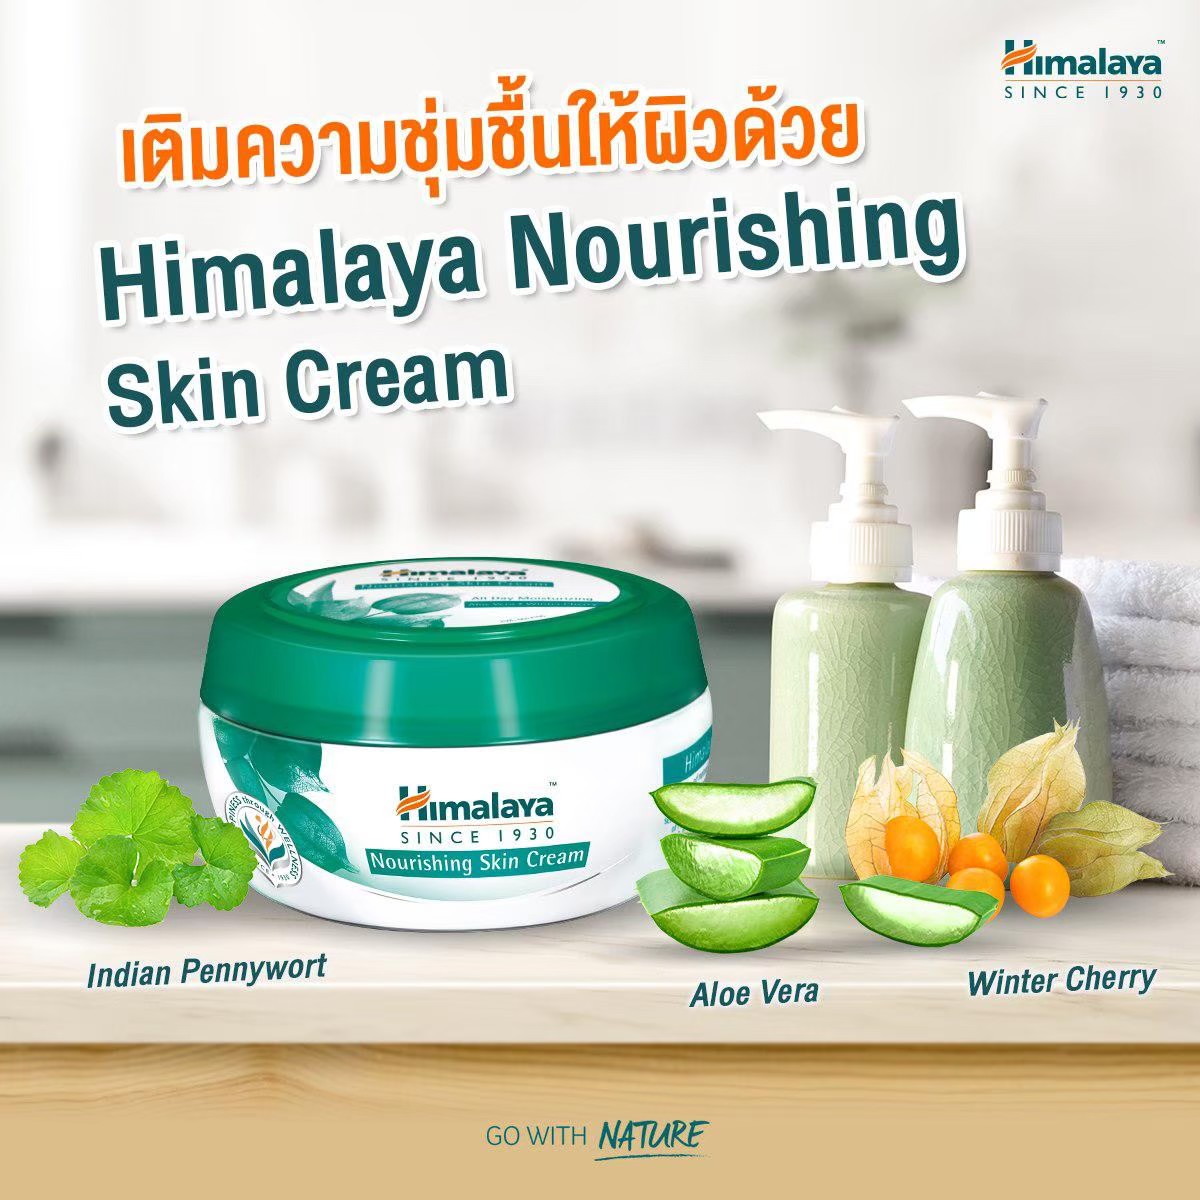 Himalaya Herbals Nourishing Skin Cream 150 ml กระปุกใหญ่ ใช้ได้นานขึ้น คุ้มค่ามากขึ้น เติมความชุ่มชื้นให้ผิว ครีมบำรุง พื้นฐาน หิมาลายา นูริชชิ่ง ฮิมาลายา